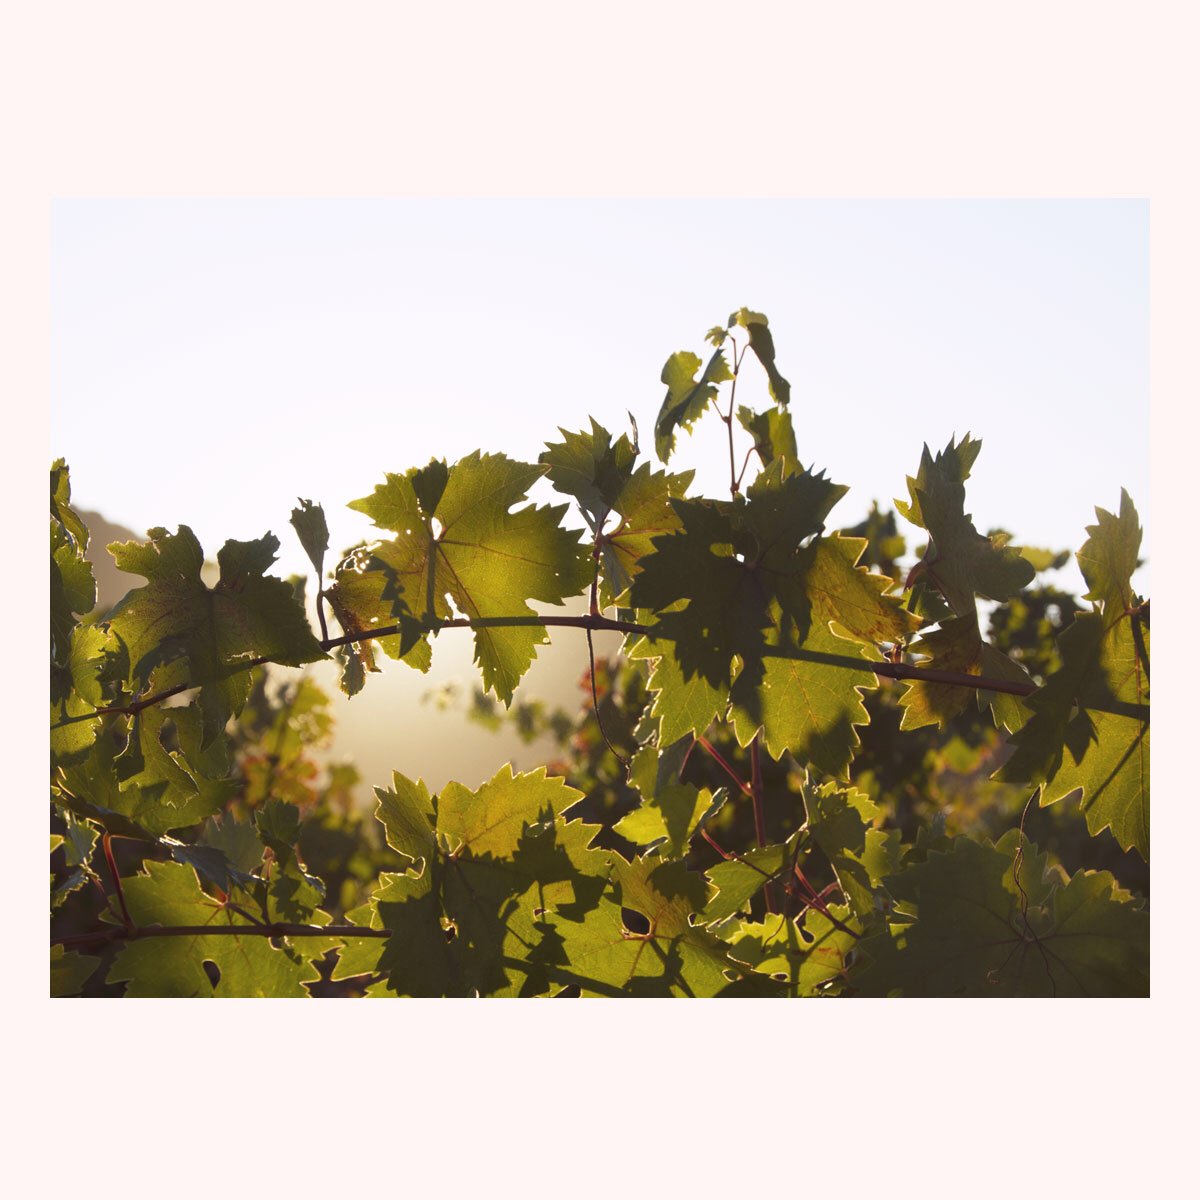 💫Catching the morning light magic in the vineyard #bacawines #forthezin #zinfandel #vineyard #napaharvest #calistoga #sunrise